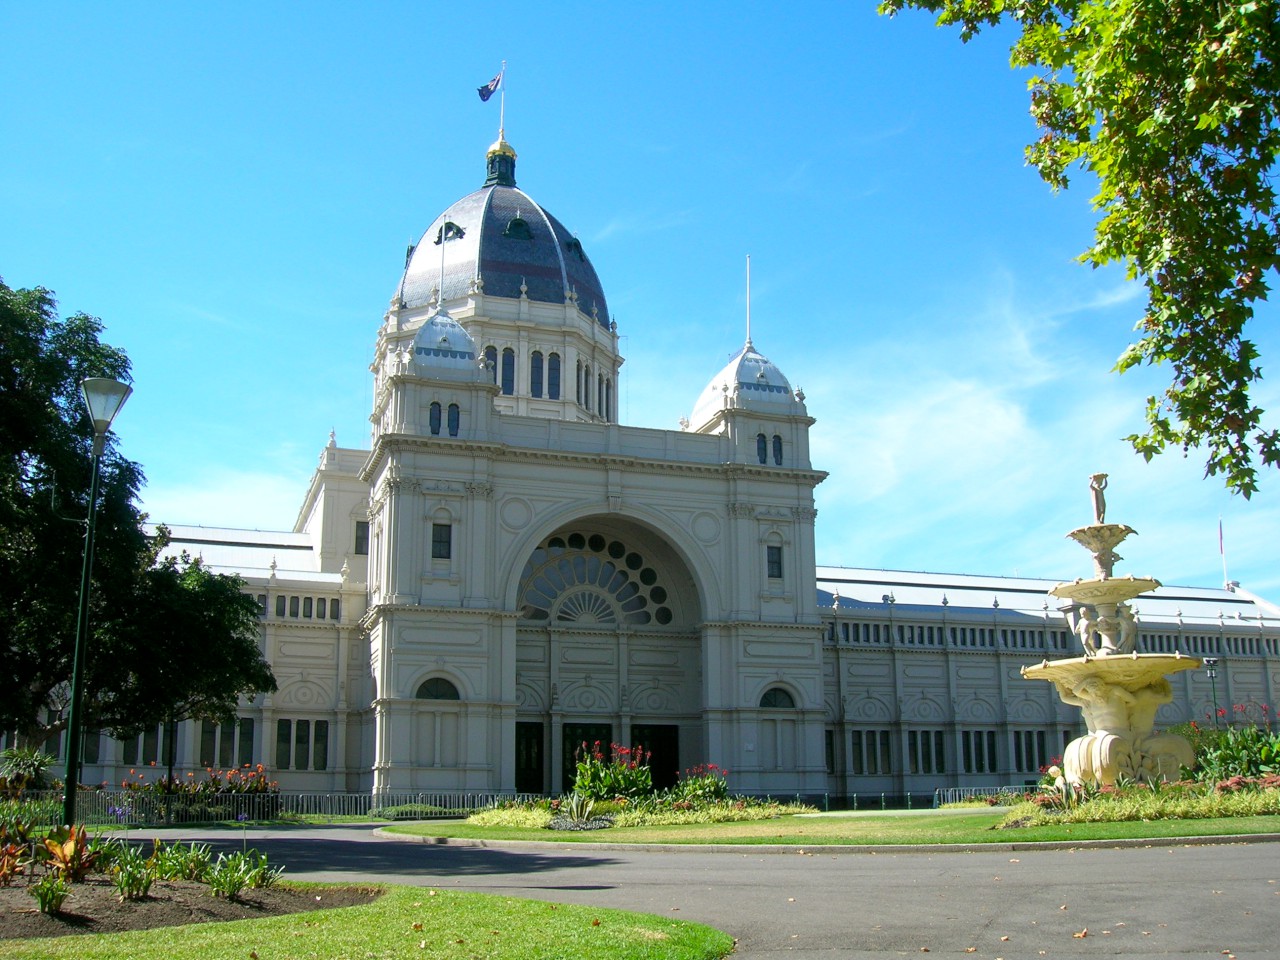 Greater North Melbourne Victoria